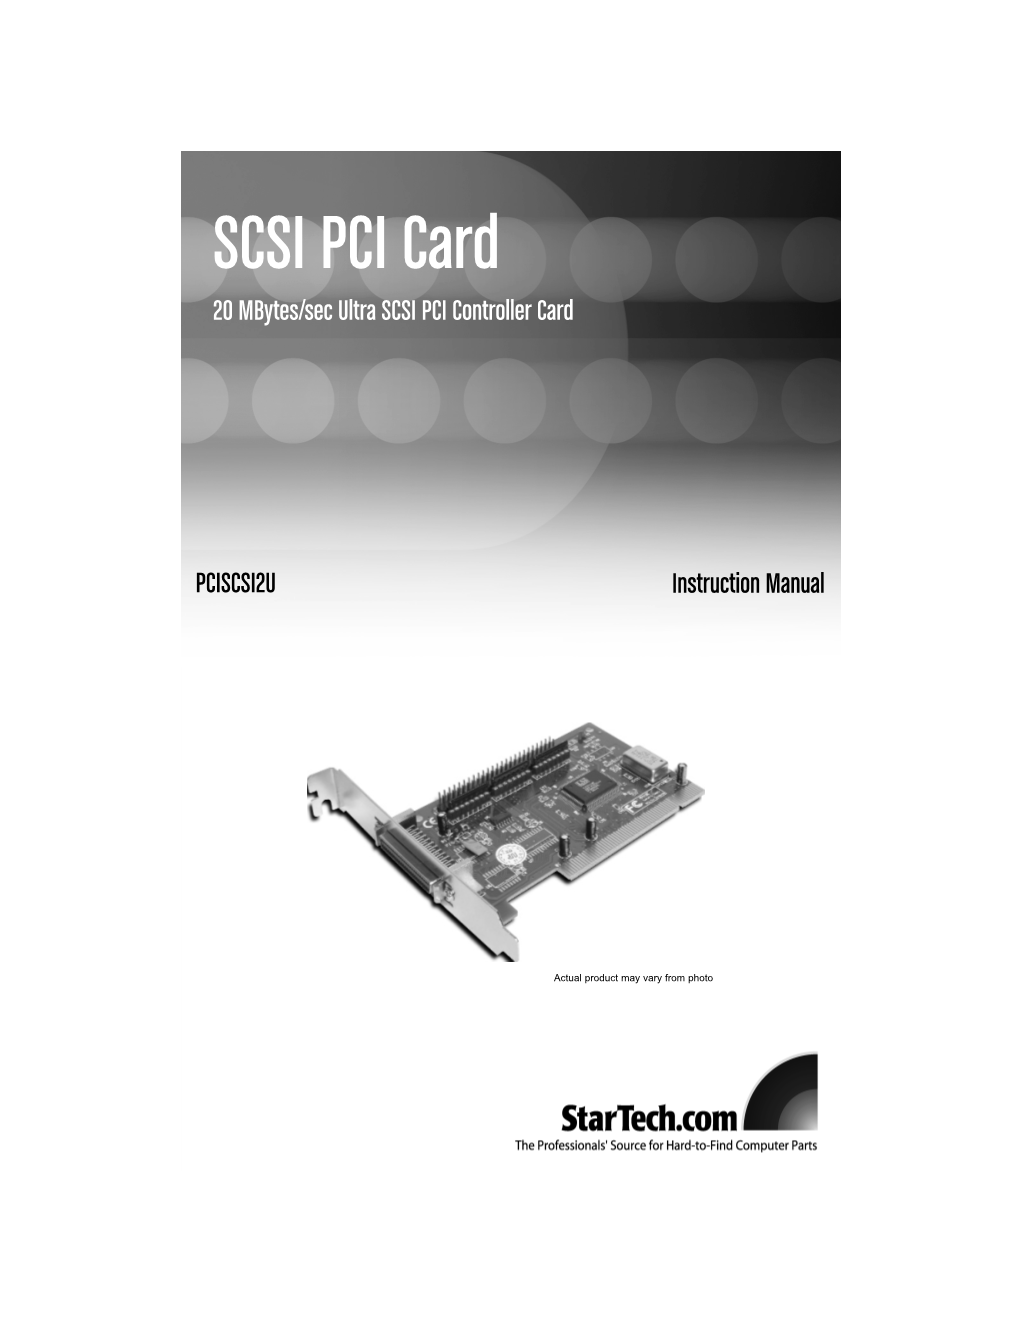 SCSI PCI Card 20 Mbytes/Sec Ultra SCSI PCI Controller Card